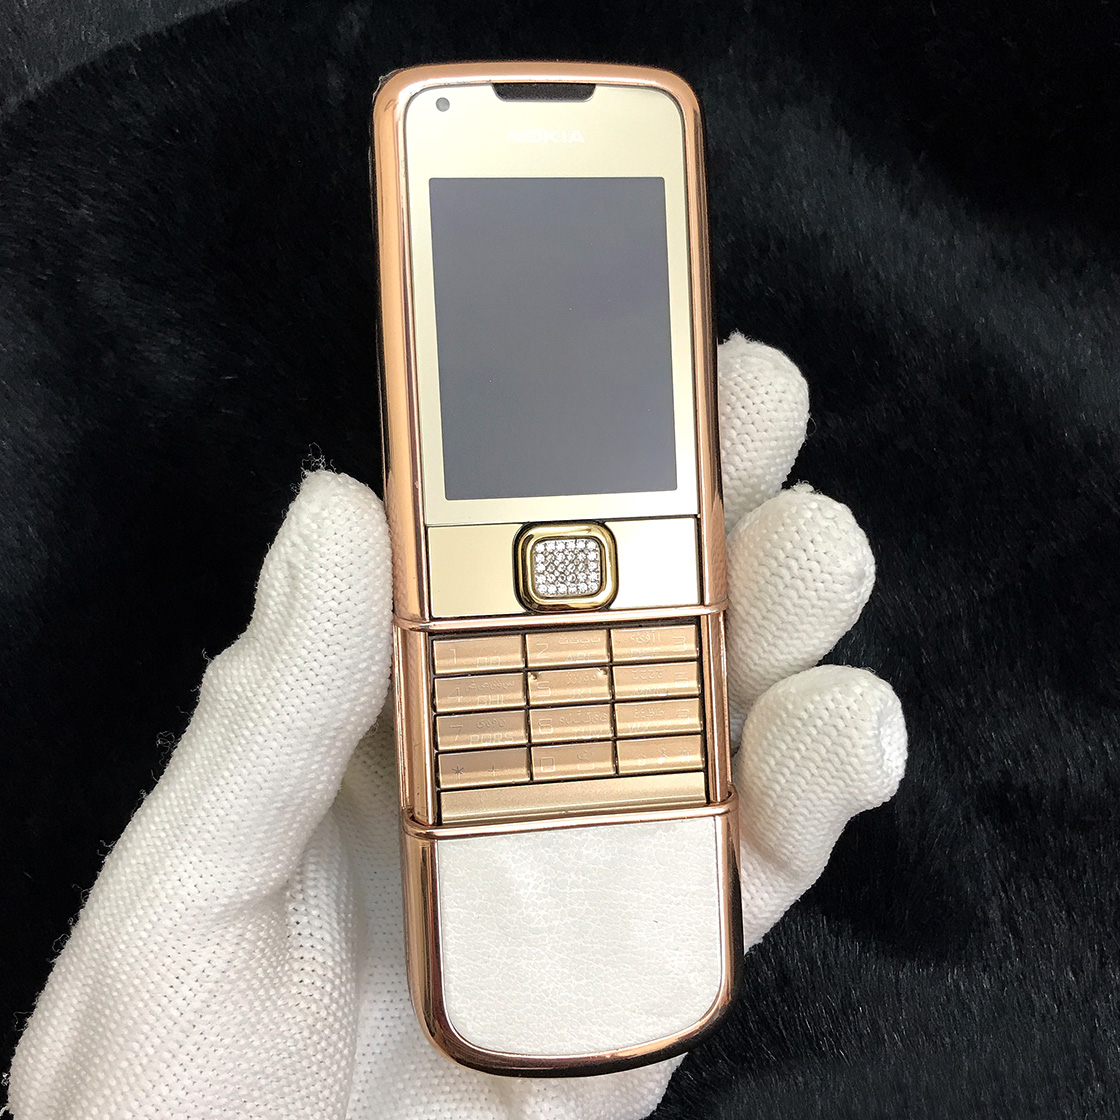 Nokia 8800 Rose Gold Arte Mạ Vàng Hồng Da Trắng Chính Hãng